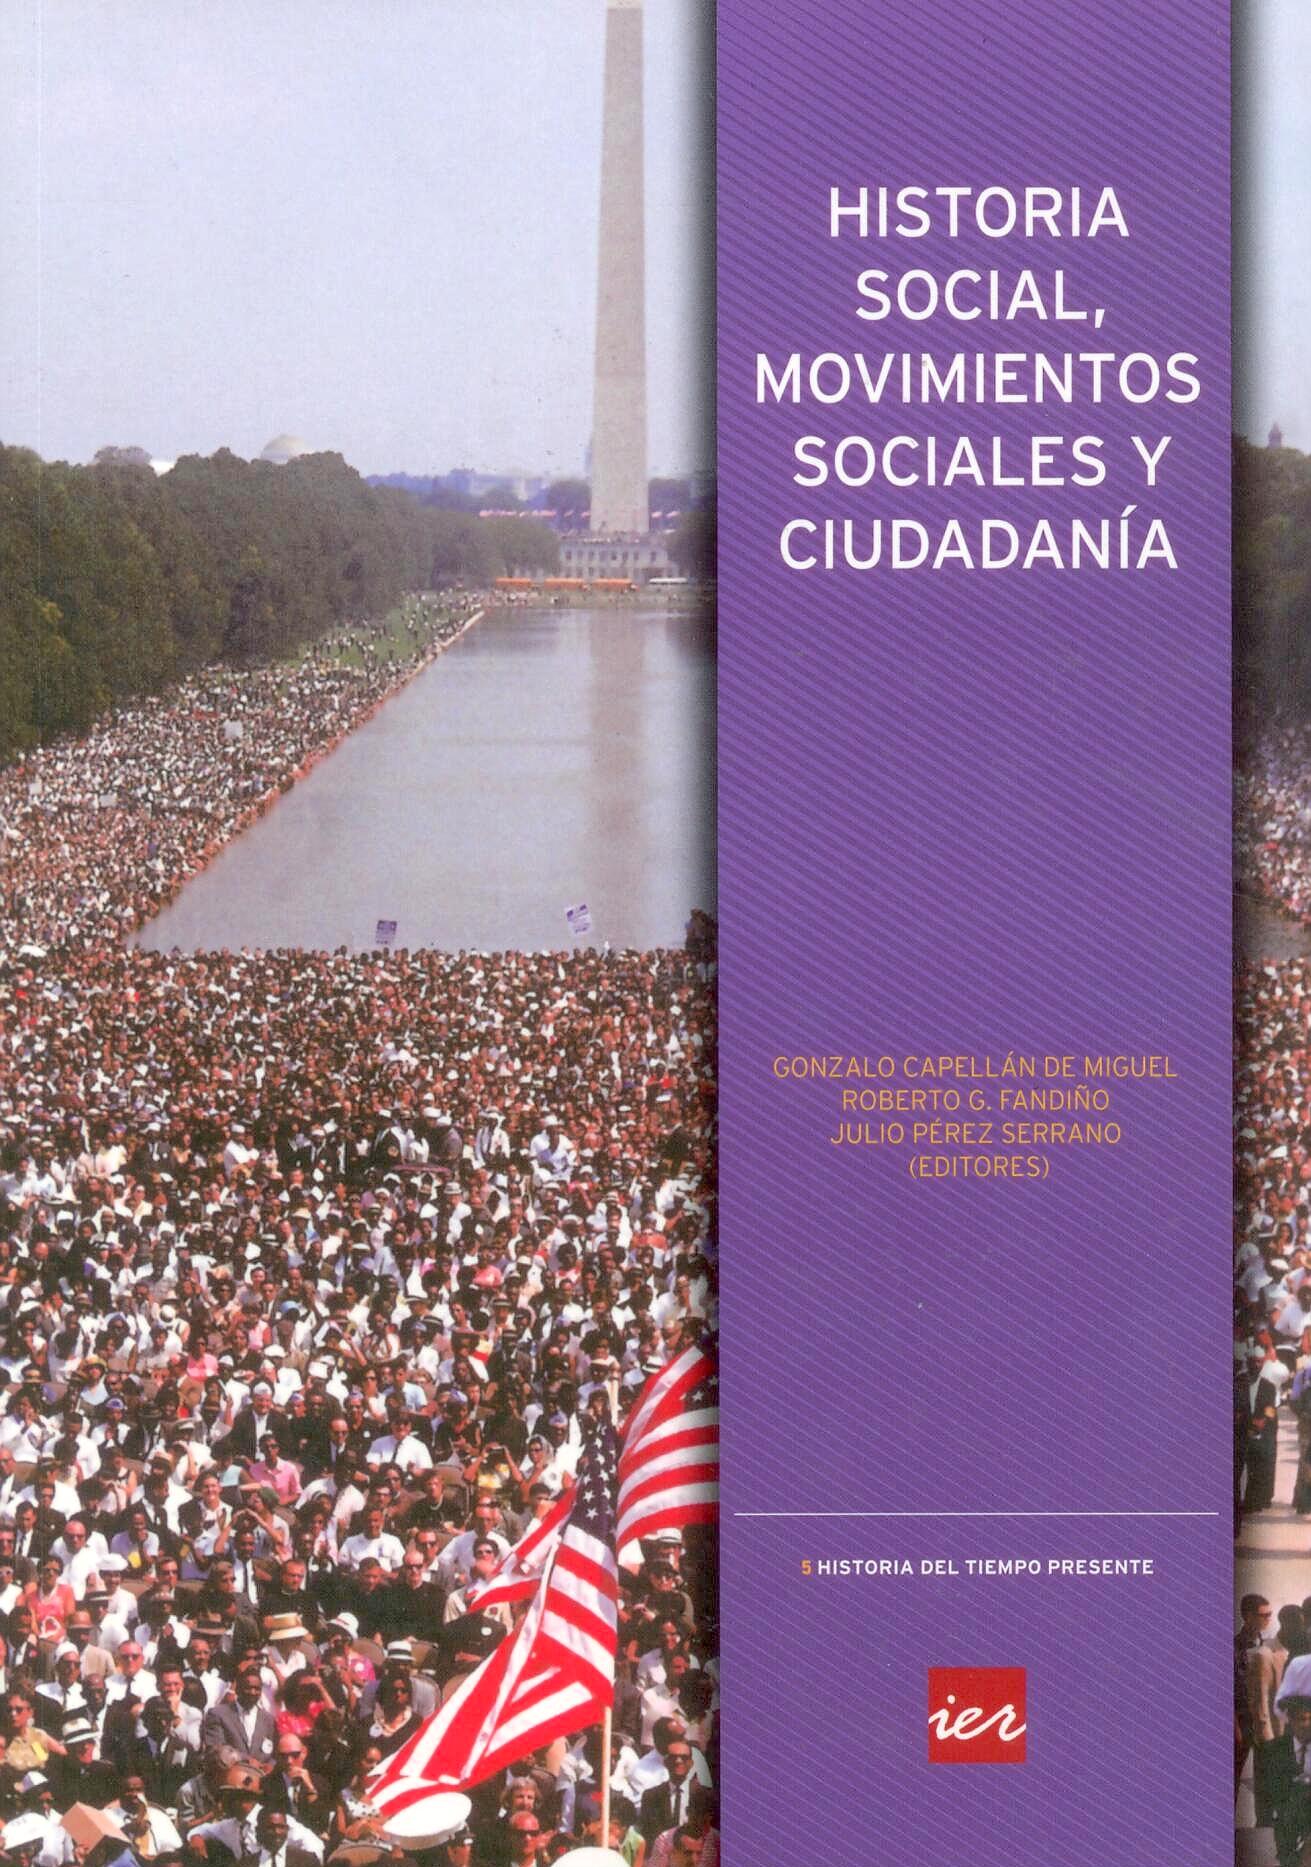 Historia social, movimientos sociales y ciudadania